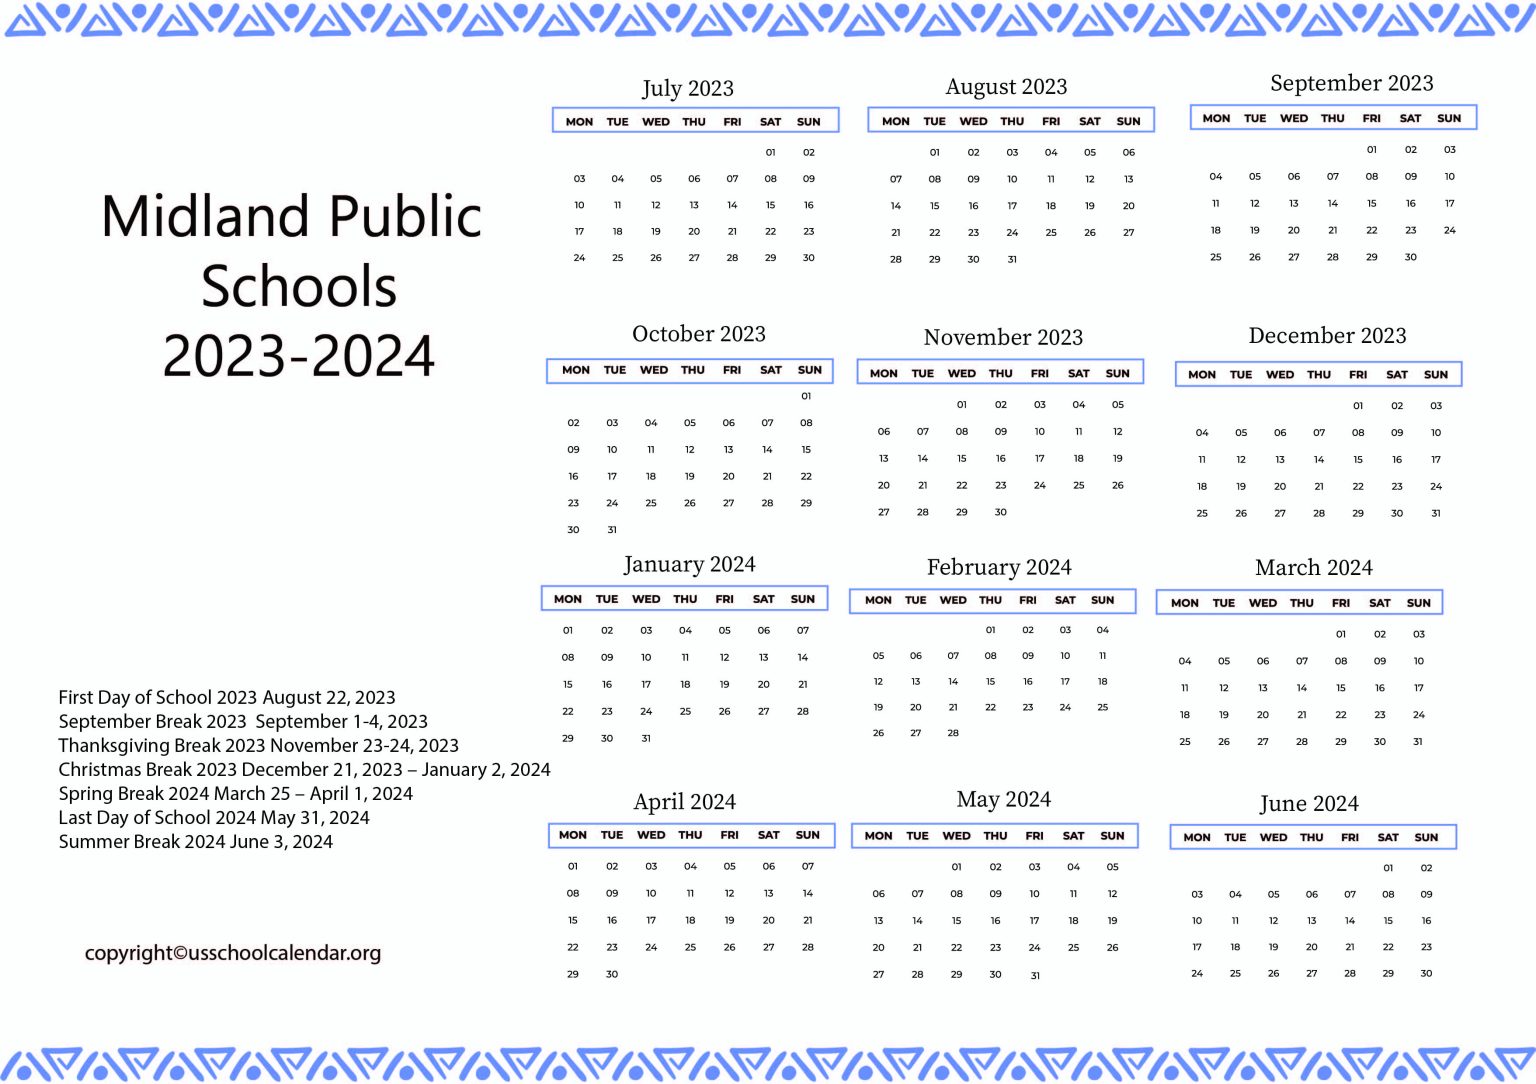 Midland Public Schools Calendar with Holidays 20232024